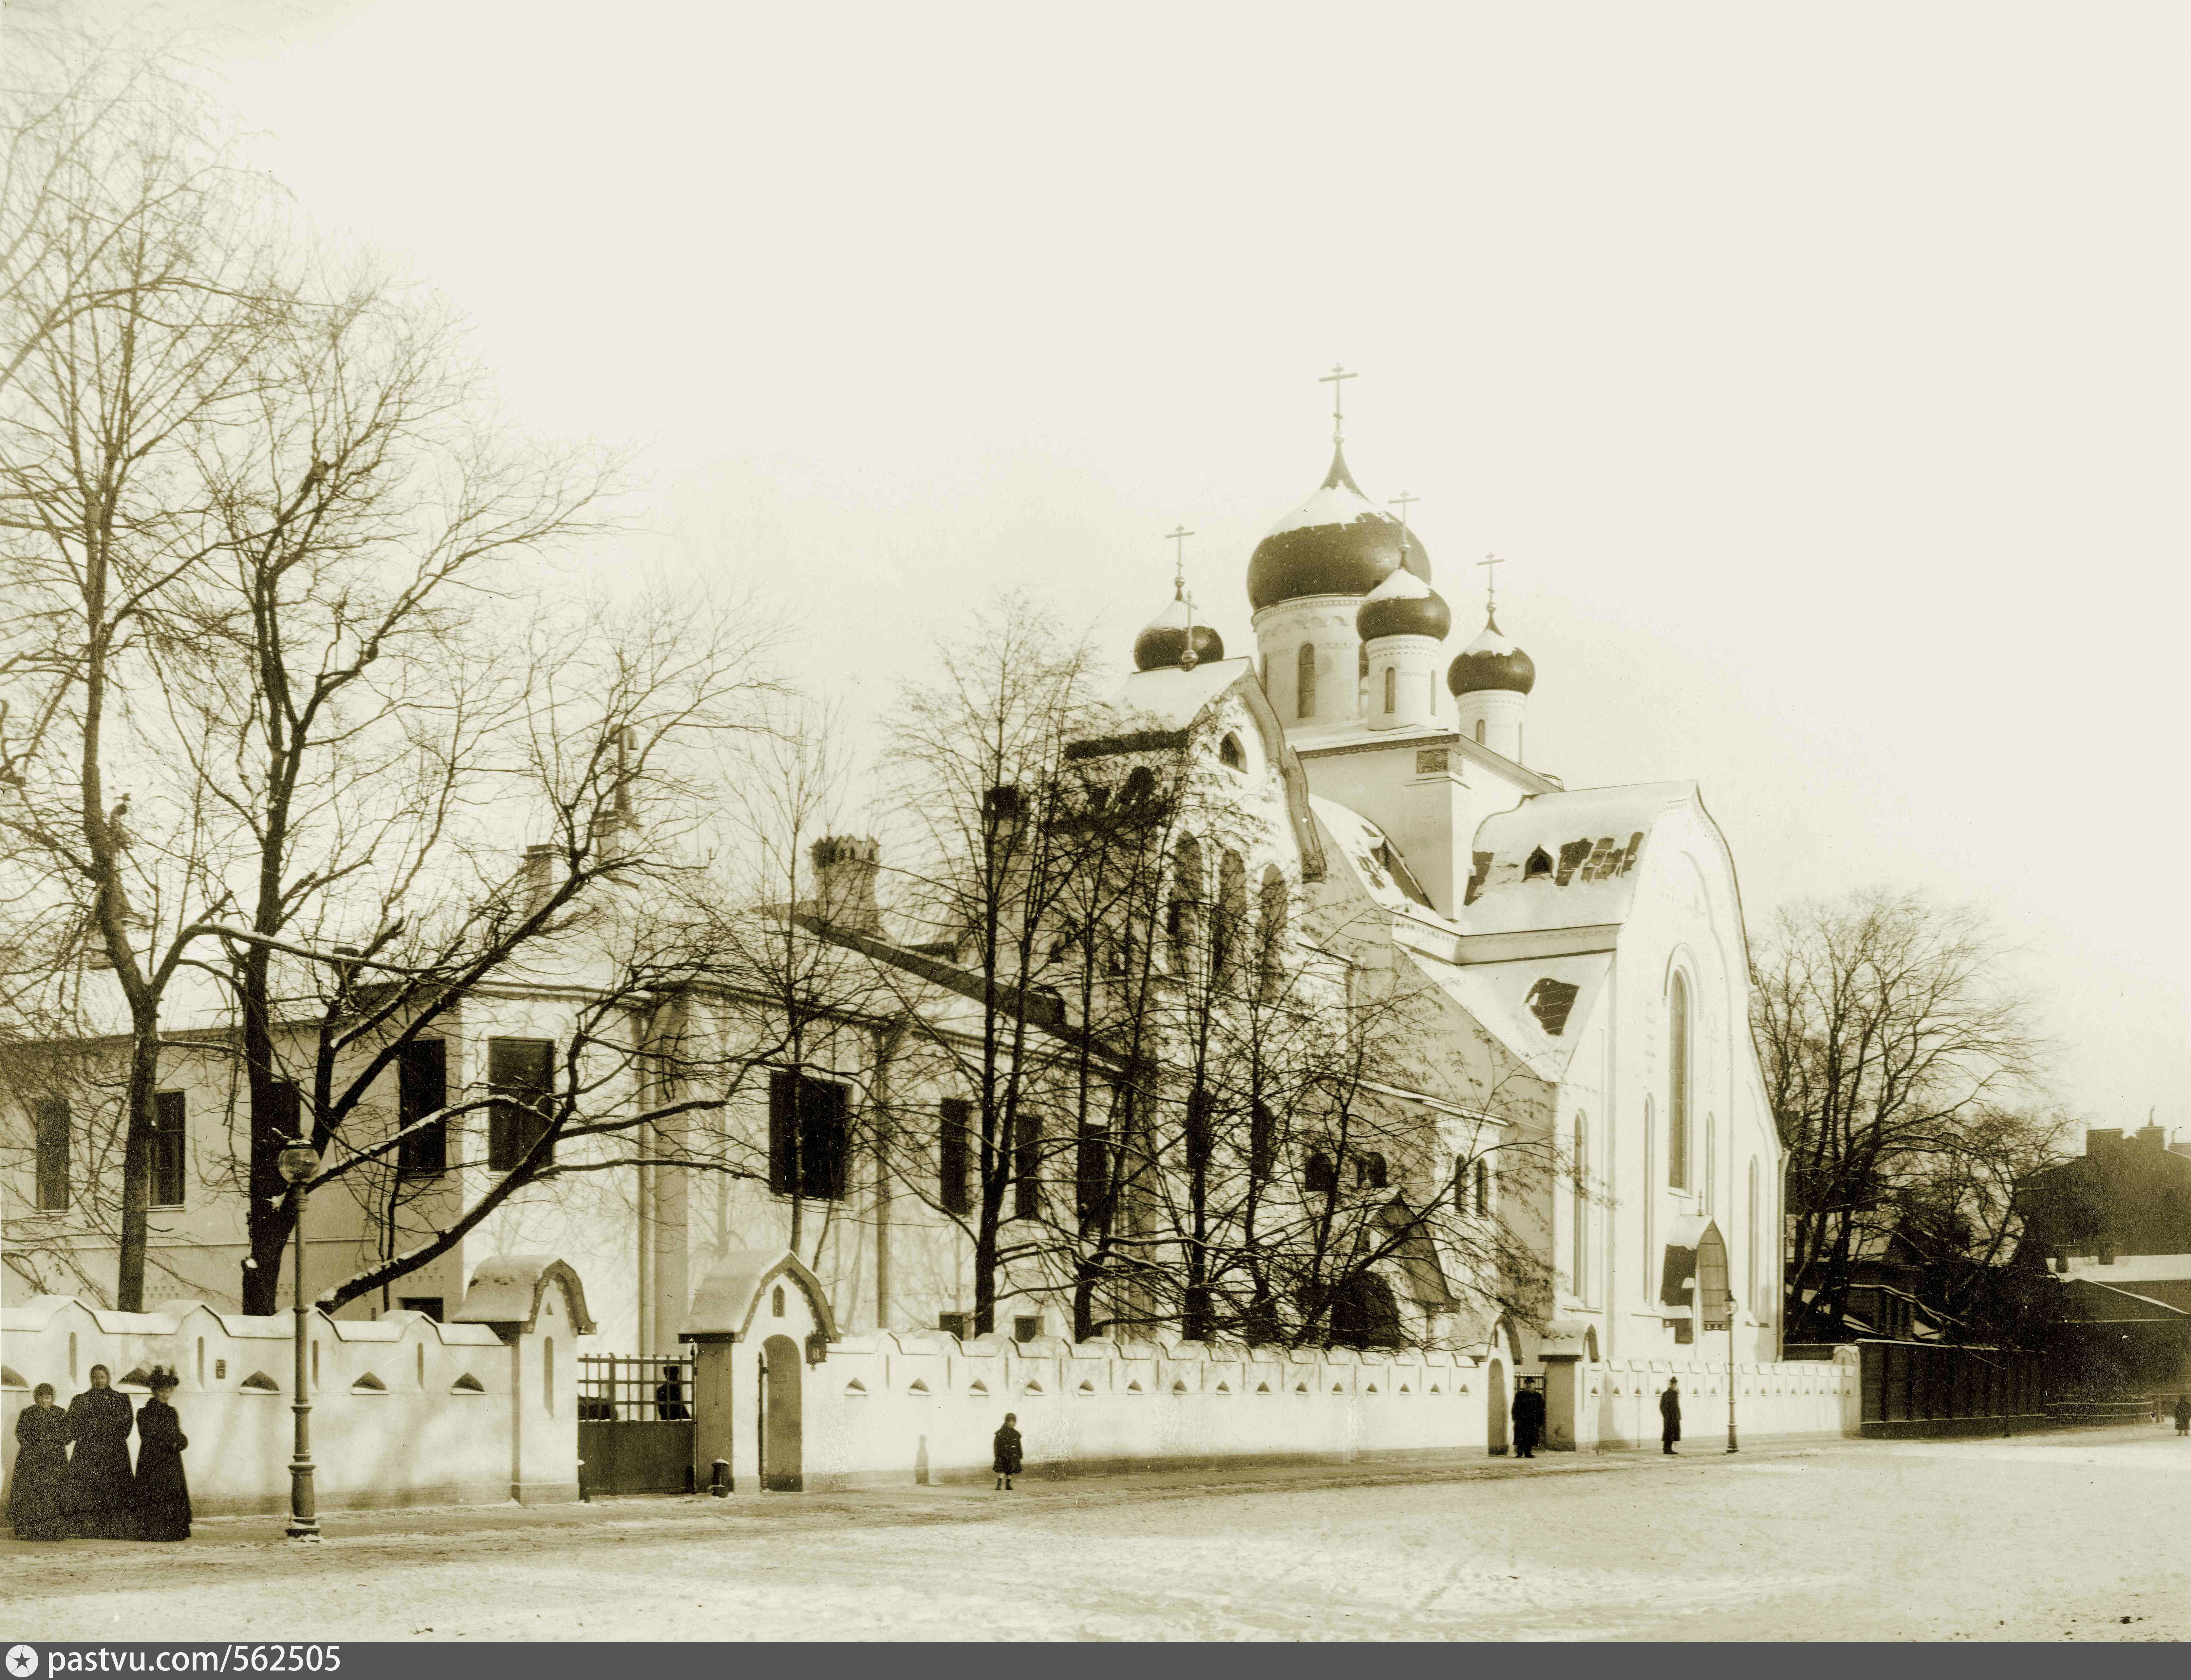 Фото 1909г. Церковь Знамения Пресвятой Богородицы. Это, как и другие фотографии позаимствованы на сайте https://pastvu.com/